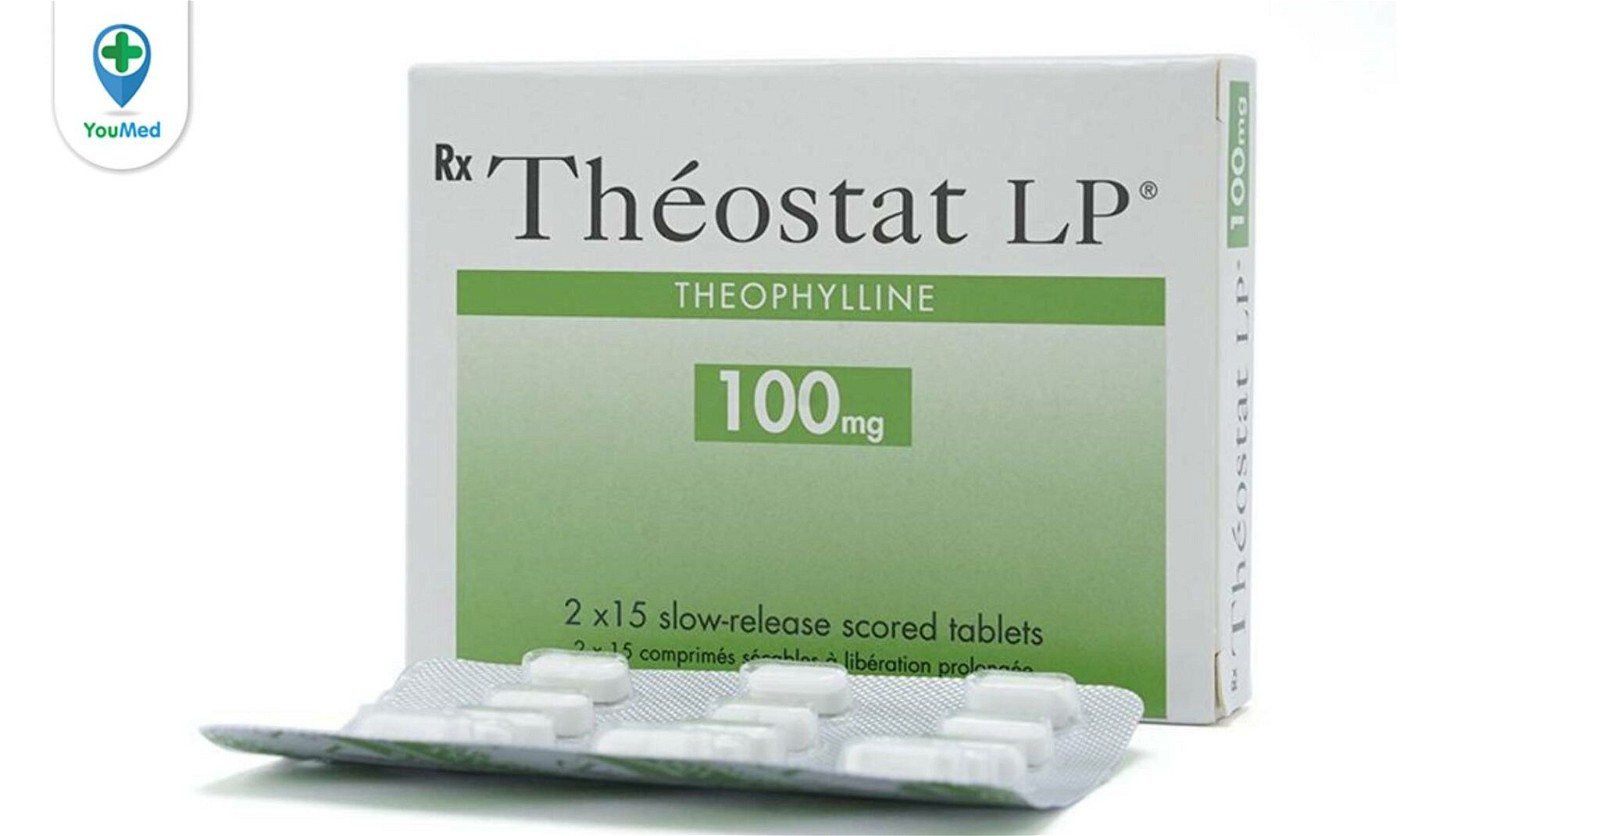 Theostat là thuốc gì? Giá, công dụng, cách dùng và những điều cần lưu ý